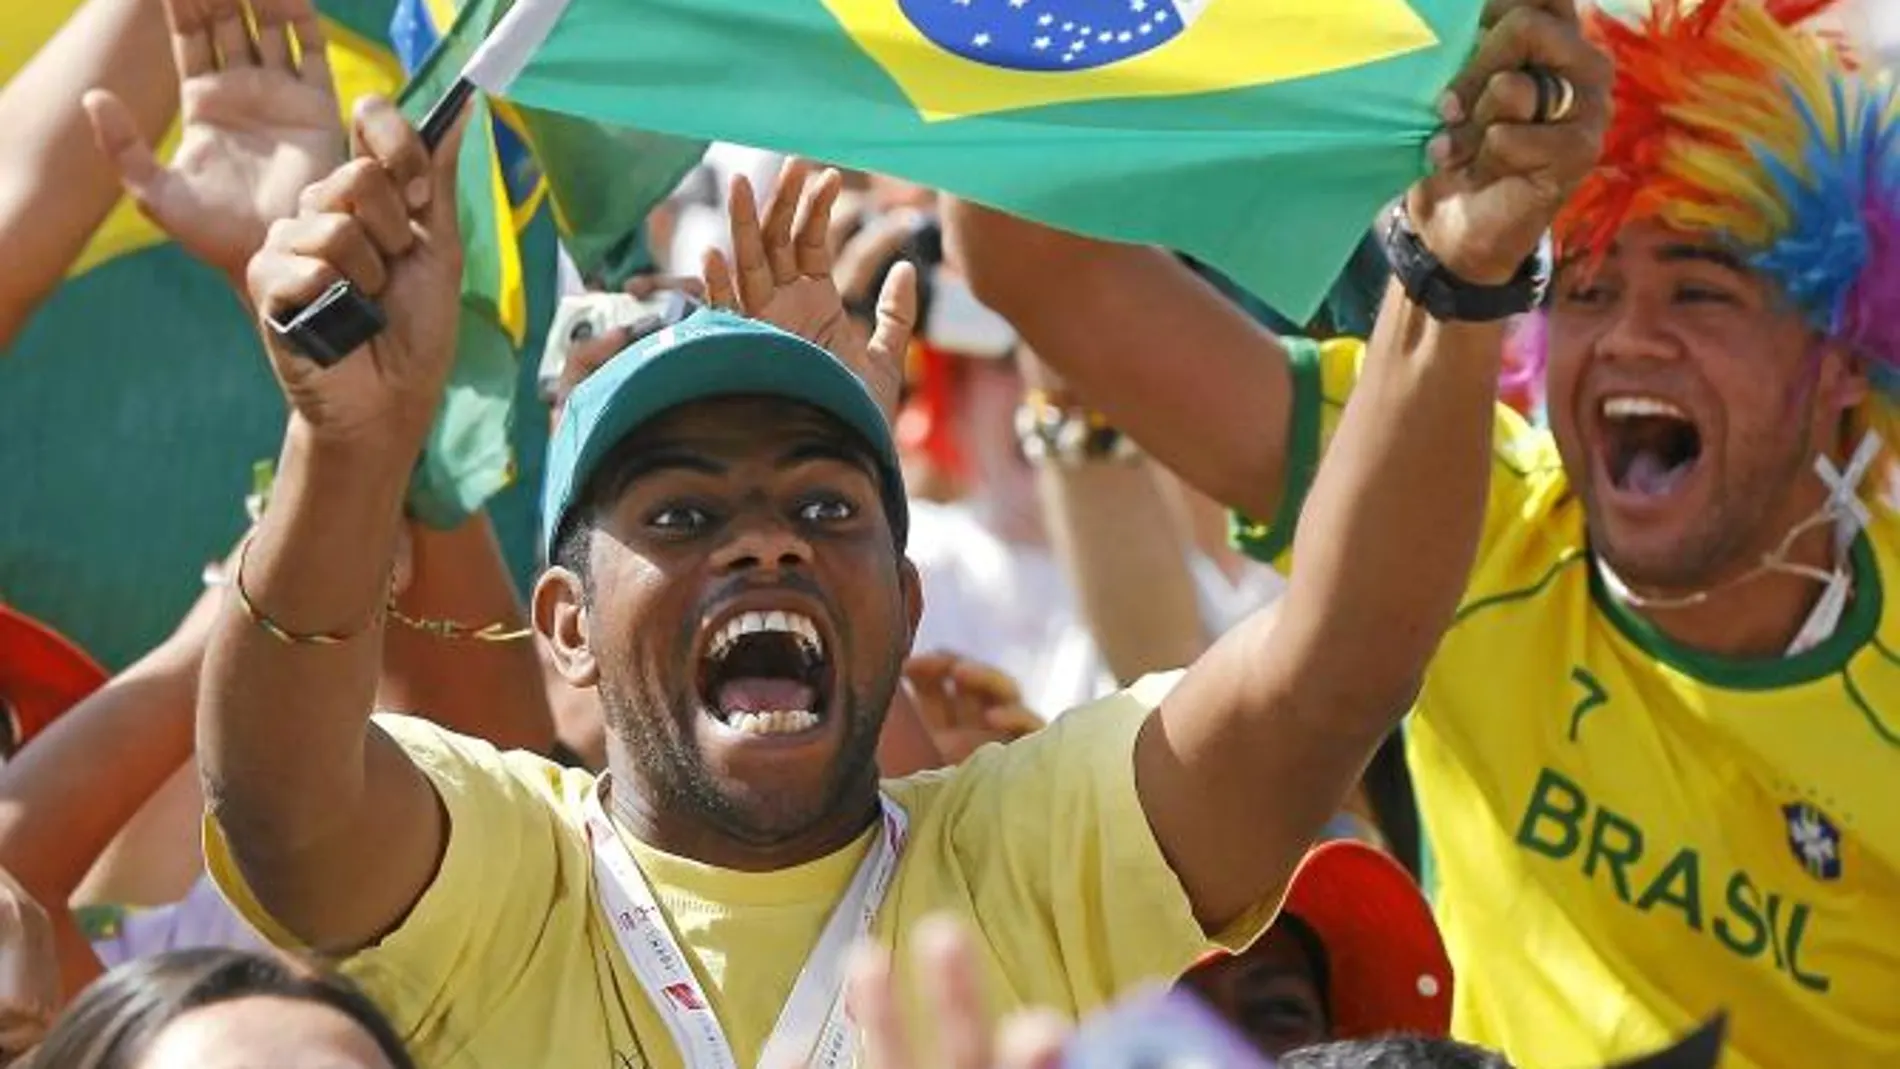 La JMJ en Rio será en 2013, para no coincidir con el Mundial 2014